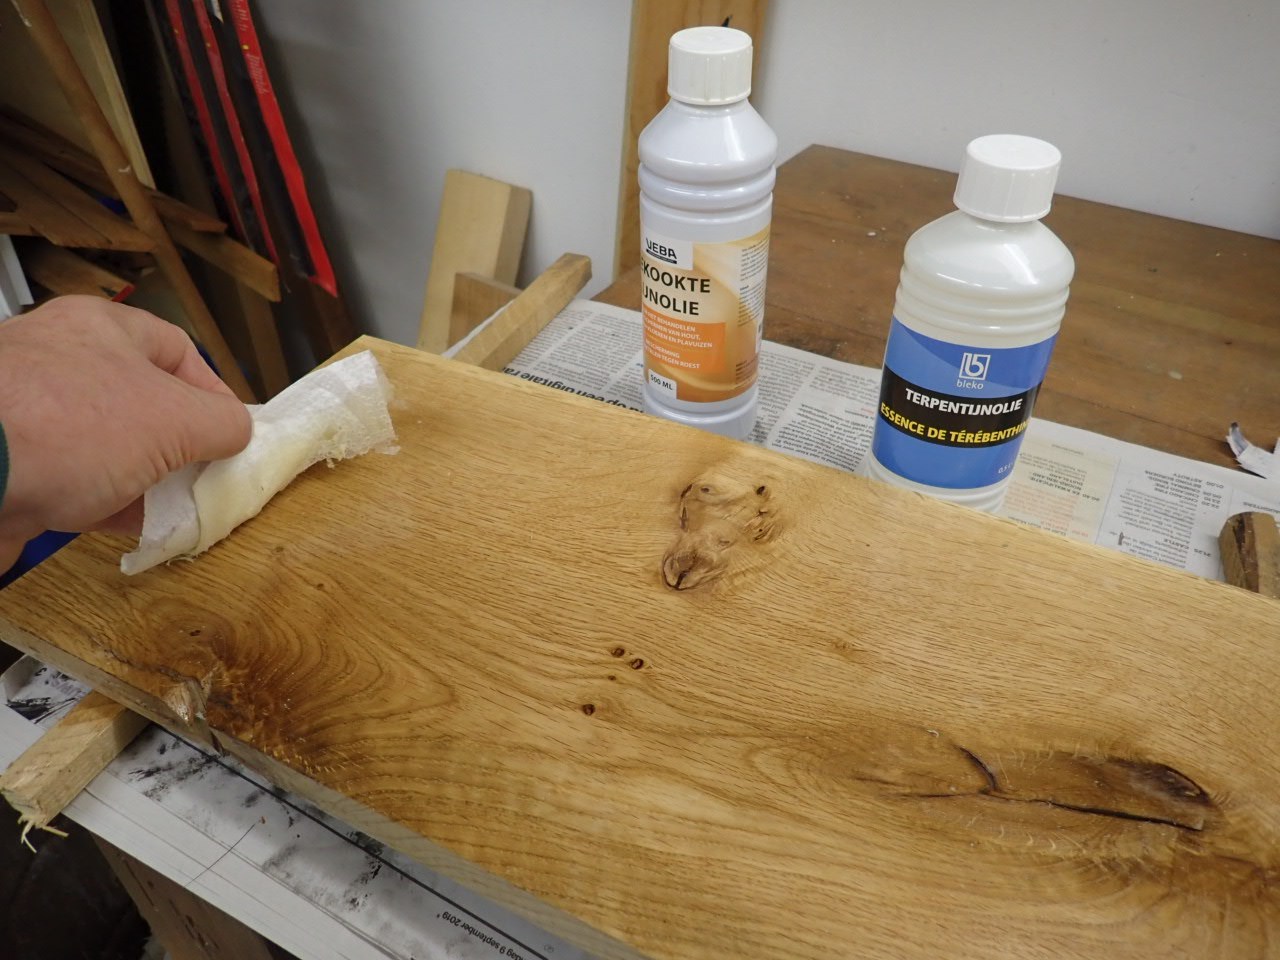 Evalueerbaar Thuisland zijde hout lakken met lijnolie